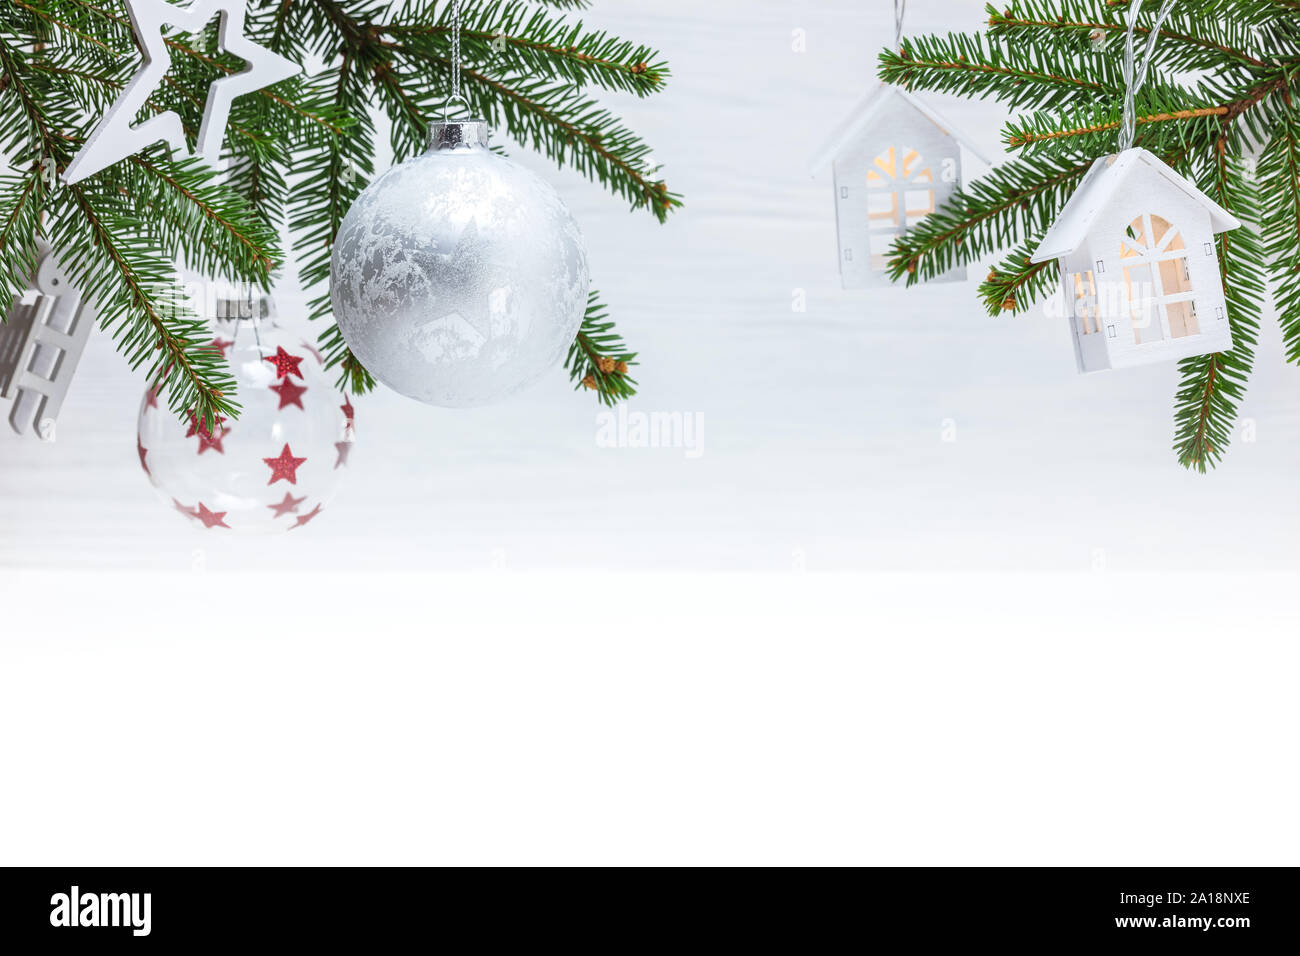 Verschiedene Kugeln aus Glas und Holz- Weihnachtsschmuck hängen an grünen Tannenbaum Äste gegen weiße Wand Hintergrund Stockfoto